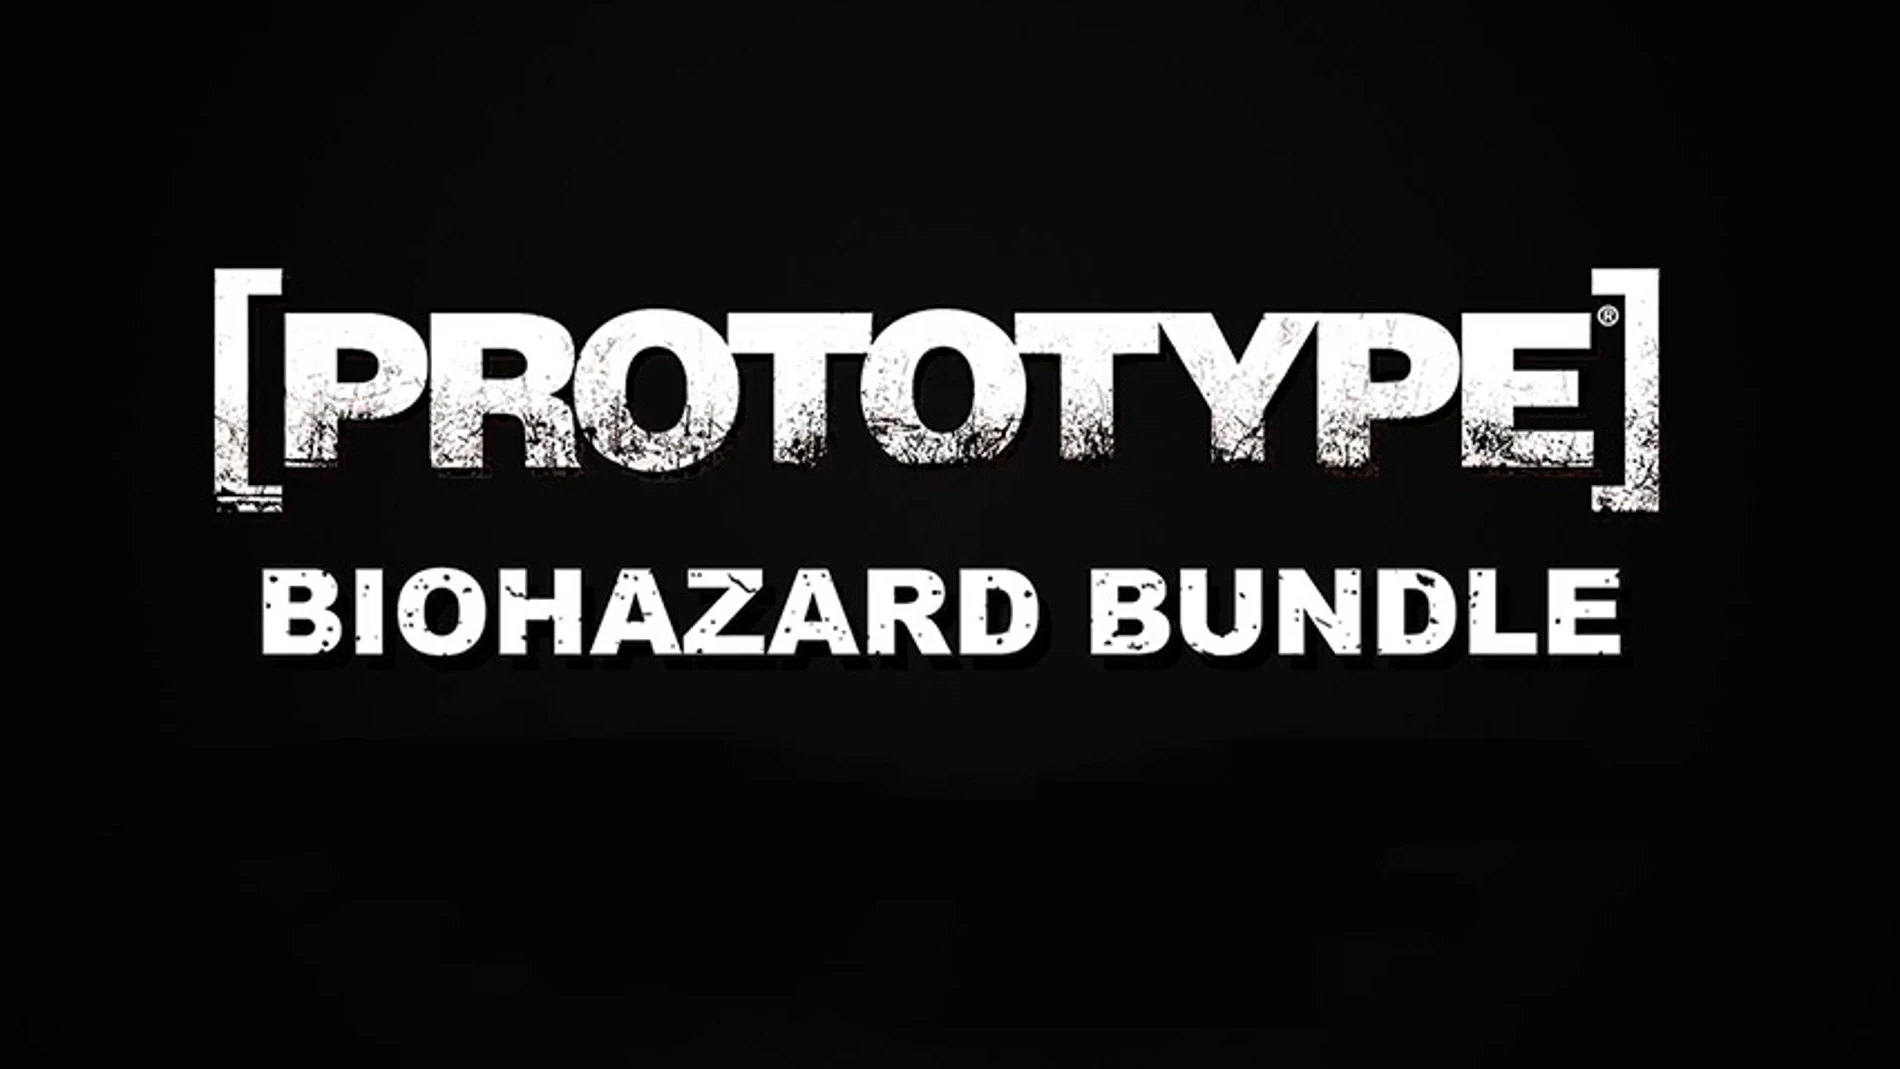 Prototype Biohazard Bundle se estrena en Xbox One con multitud de problemas de rendimiento